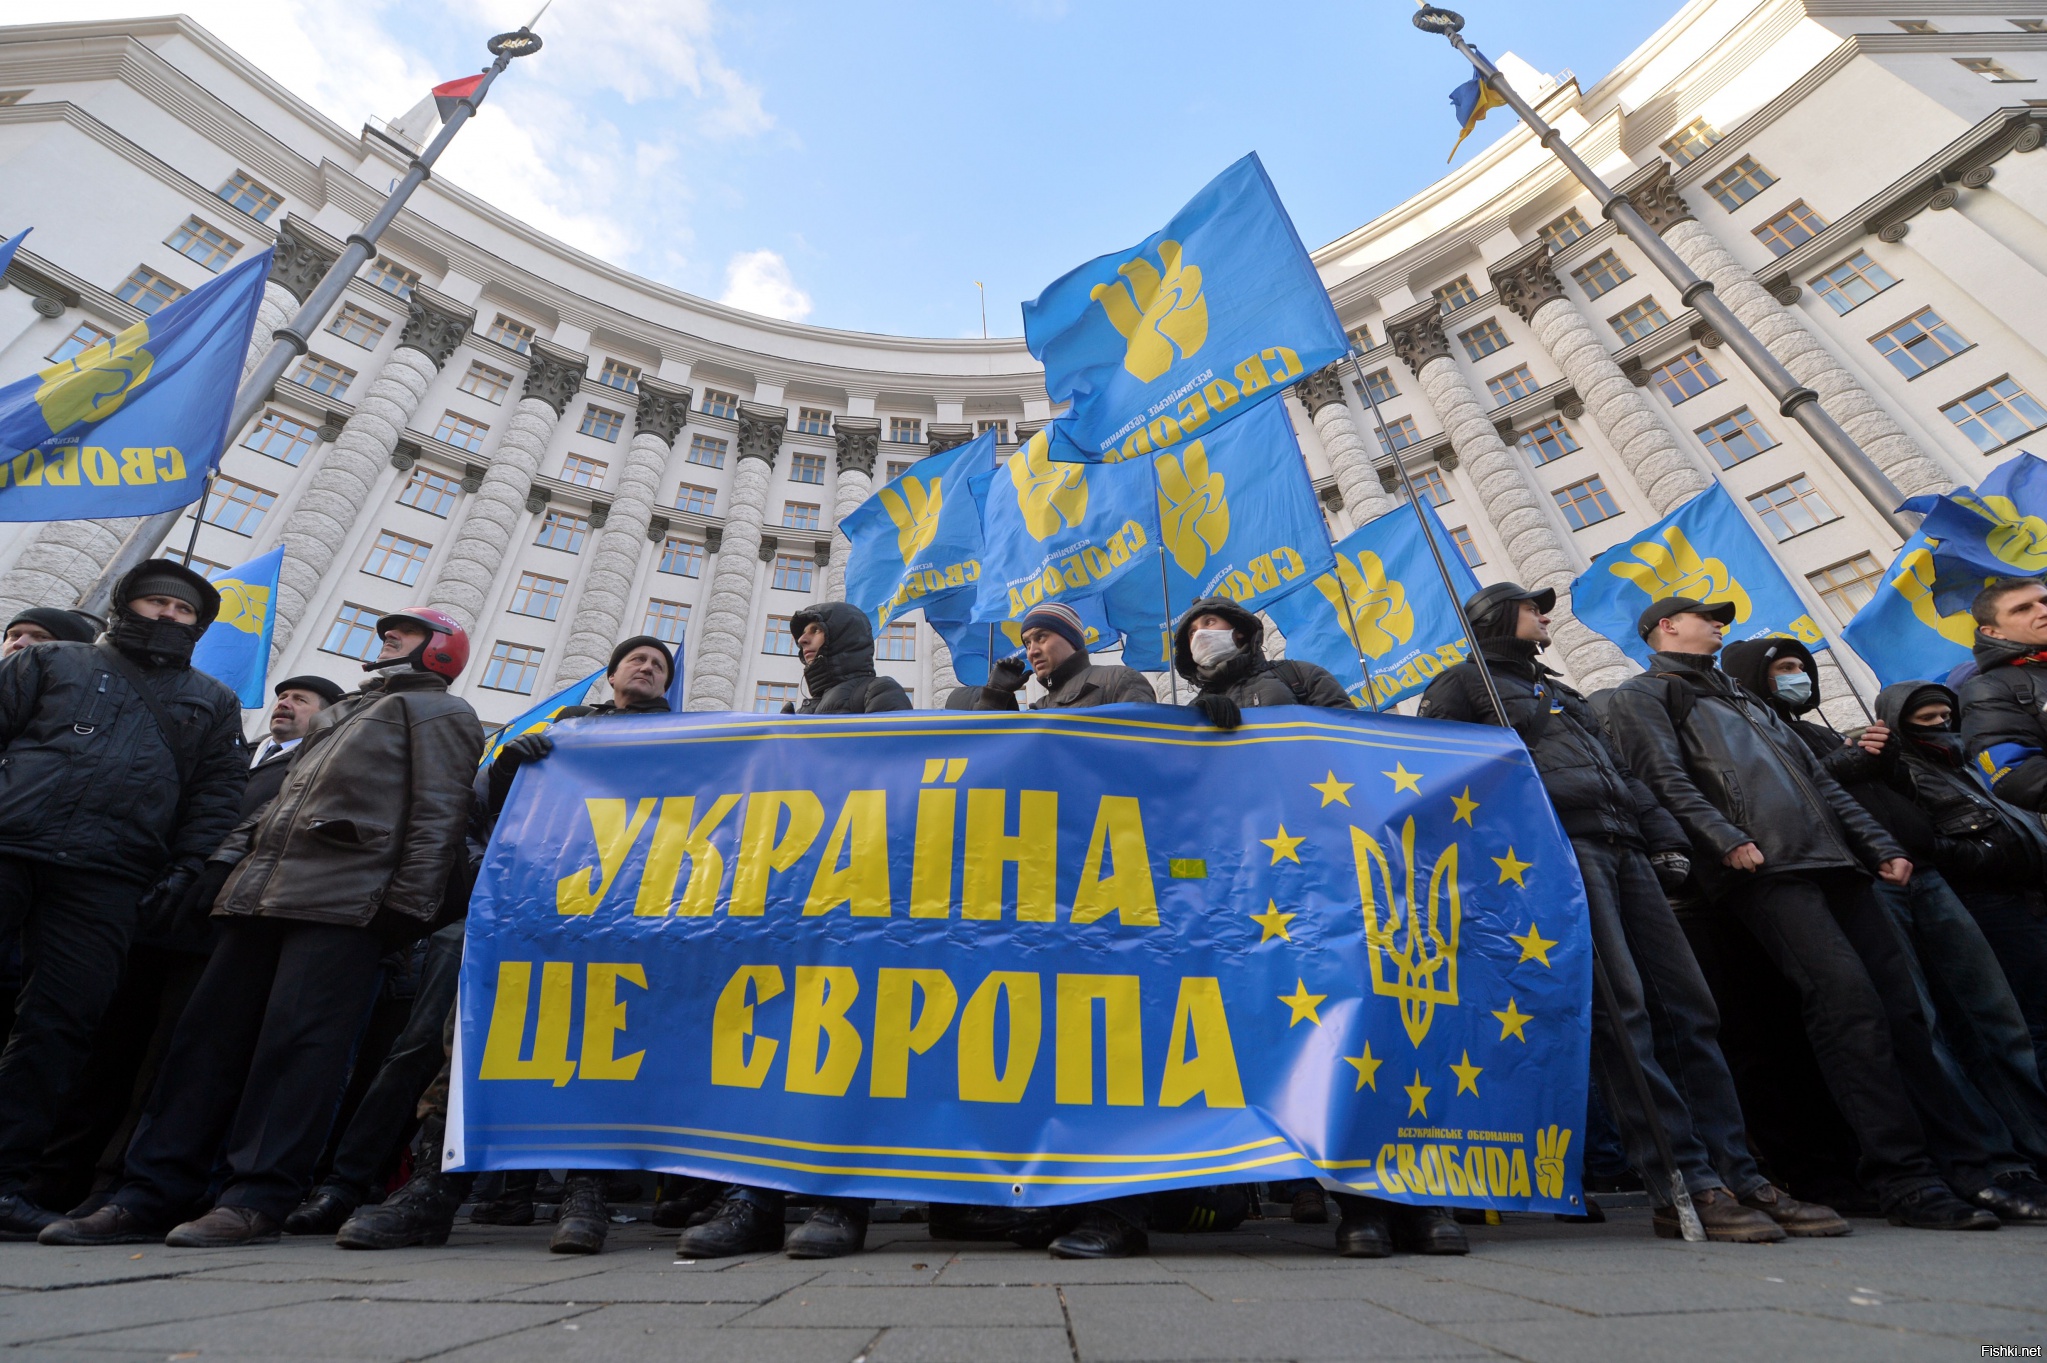 Европа против украины. Украина Европа. Украина цэ Европа. Оппозиция Украины. Украина це Европа Майдан.